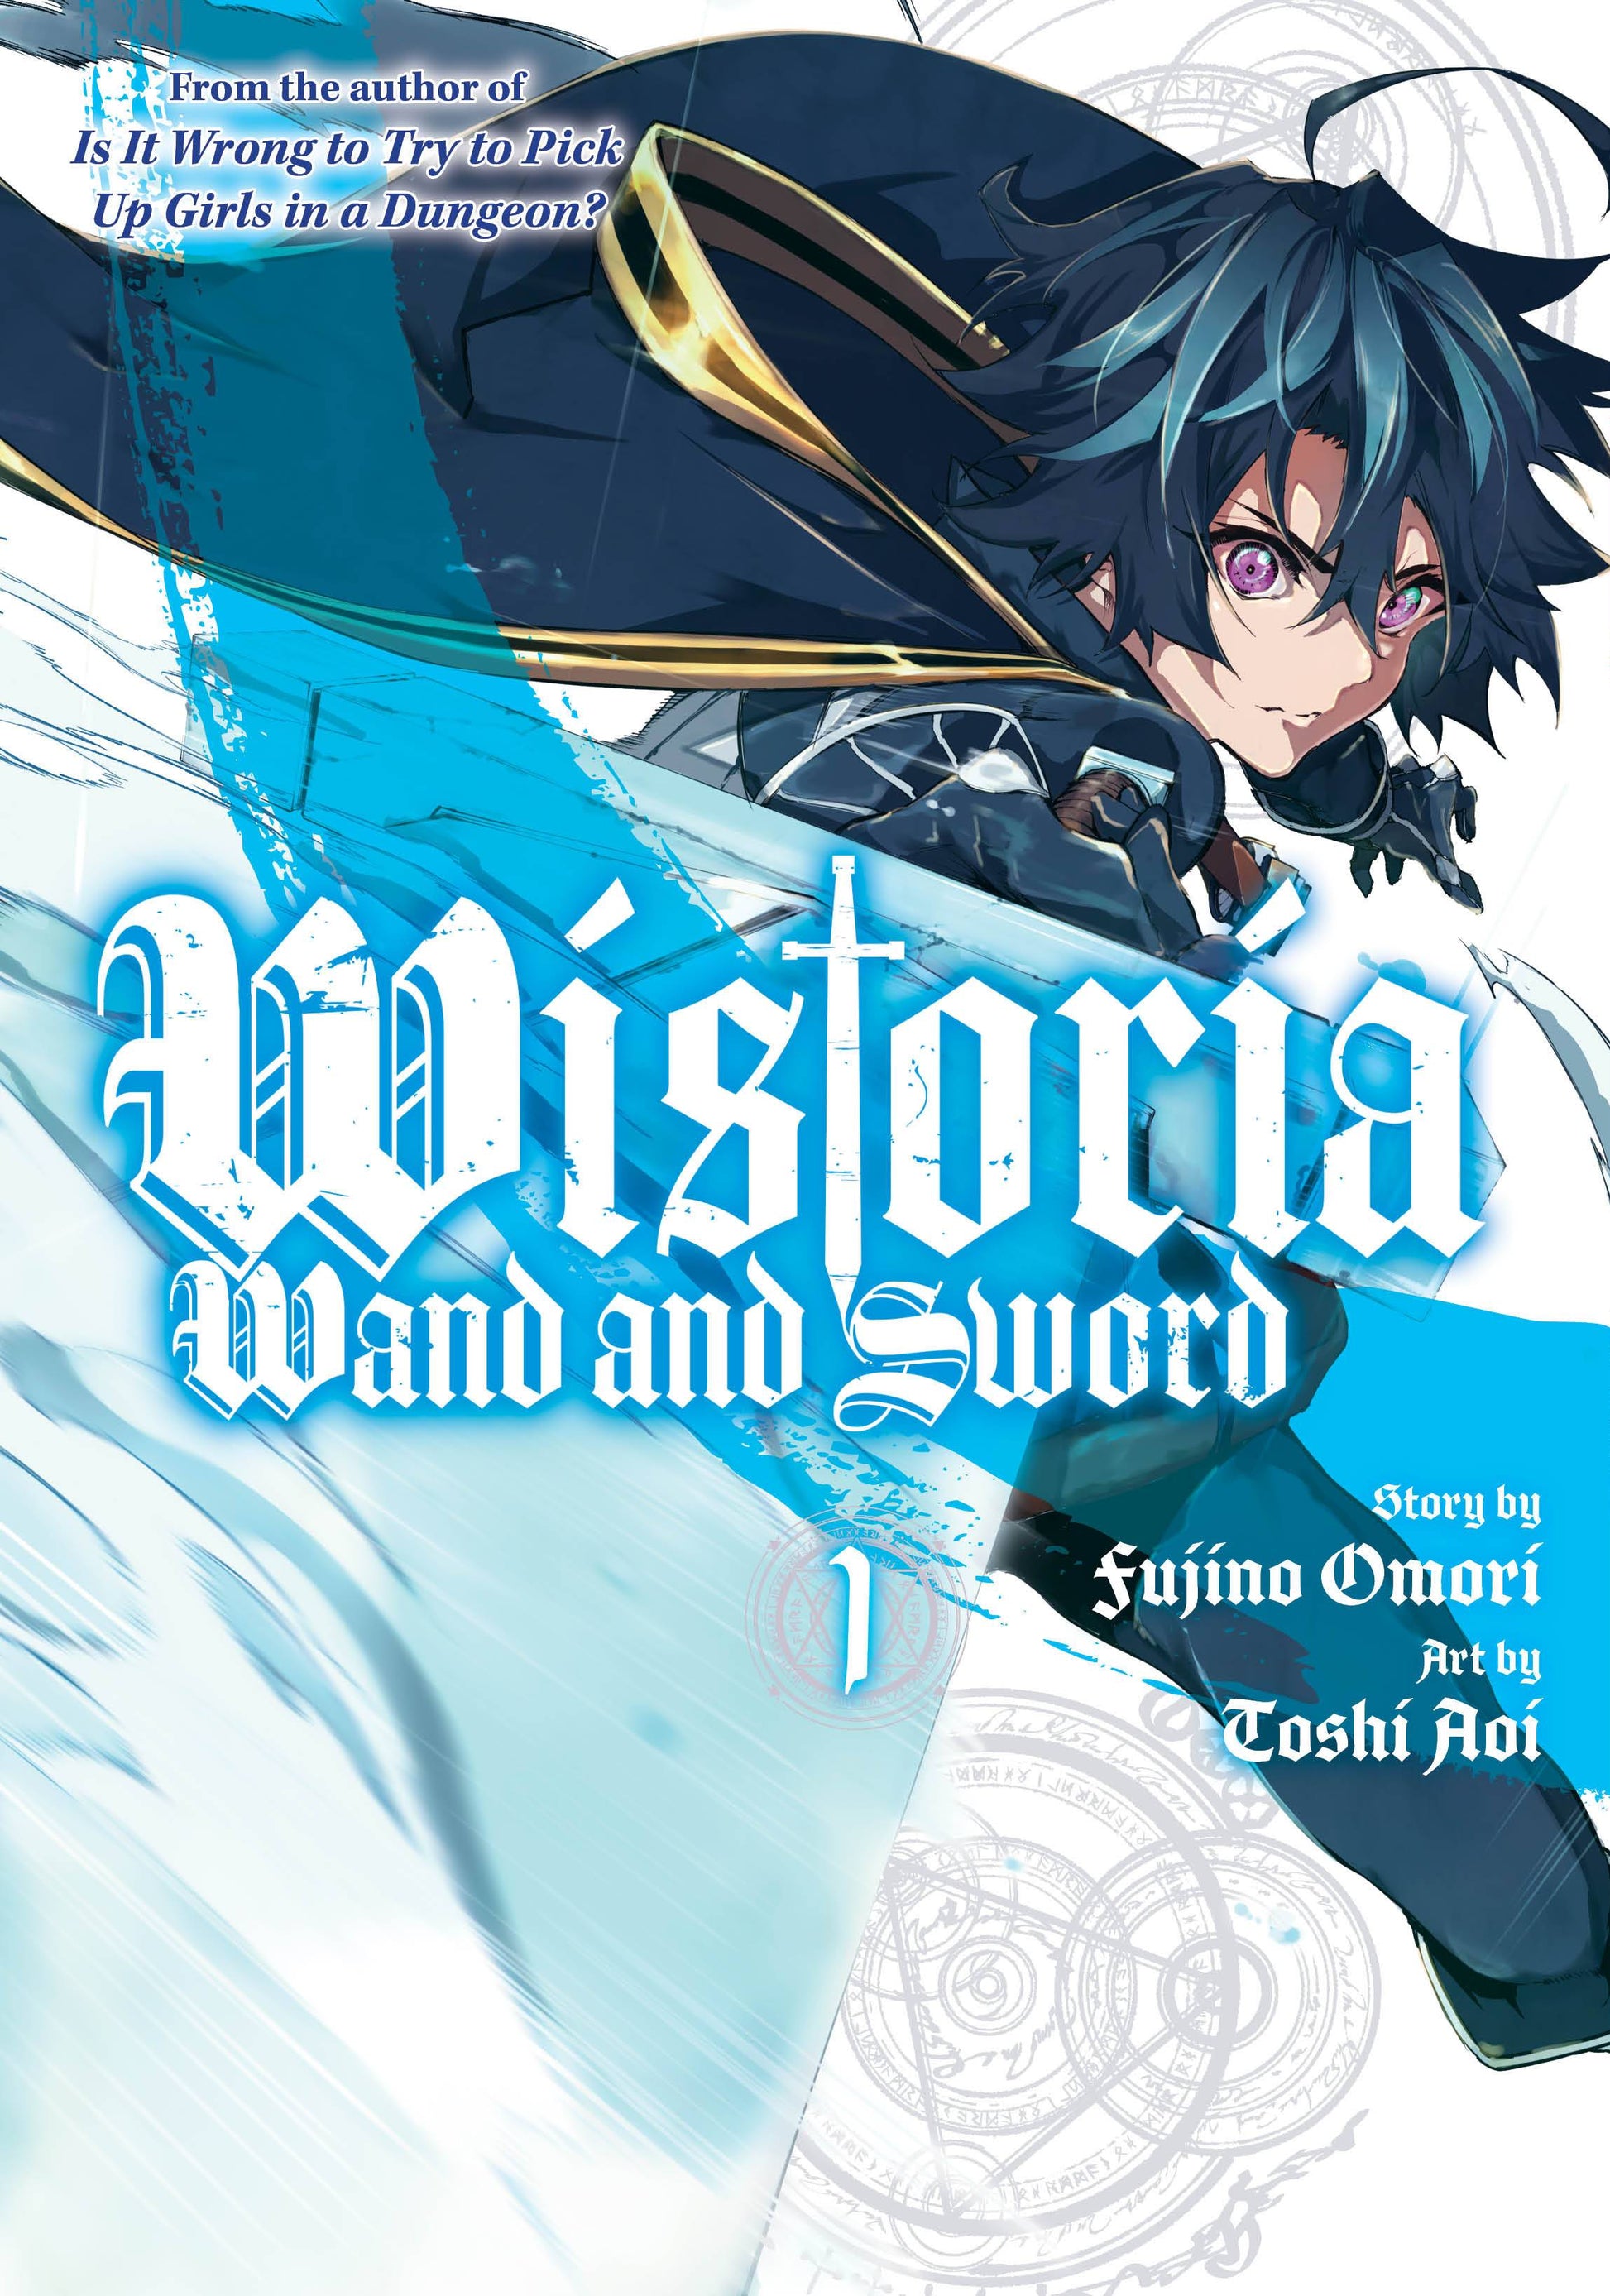 The One Stop Shop Comics & Games Wistoria Wand & Sword Gn Vol 01 (C: 0-1-1) (11/30/2022) KODANSHA COMICS